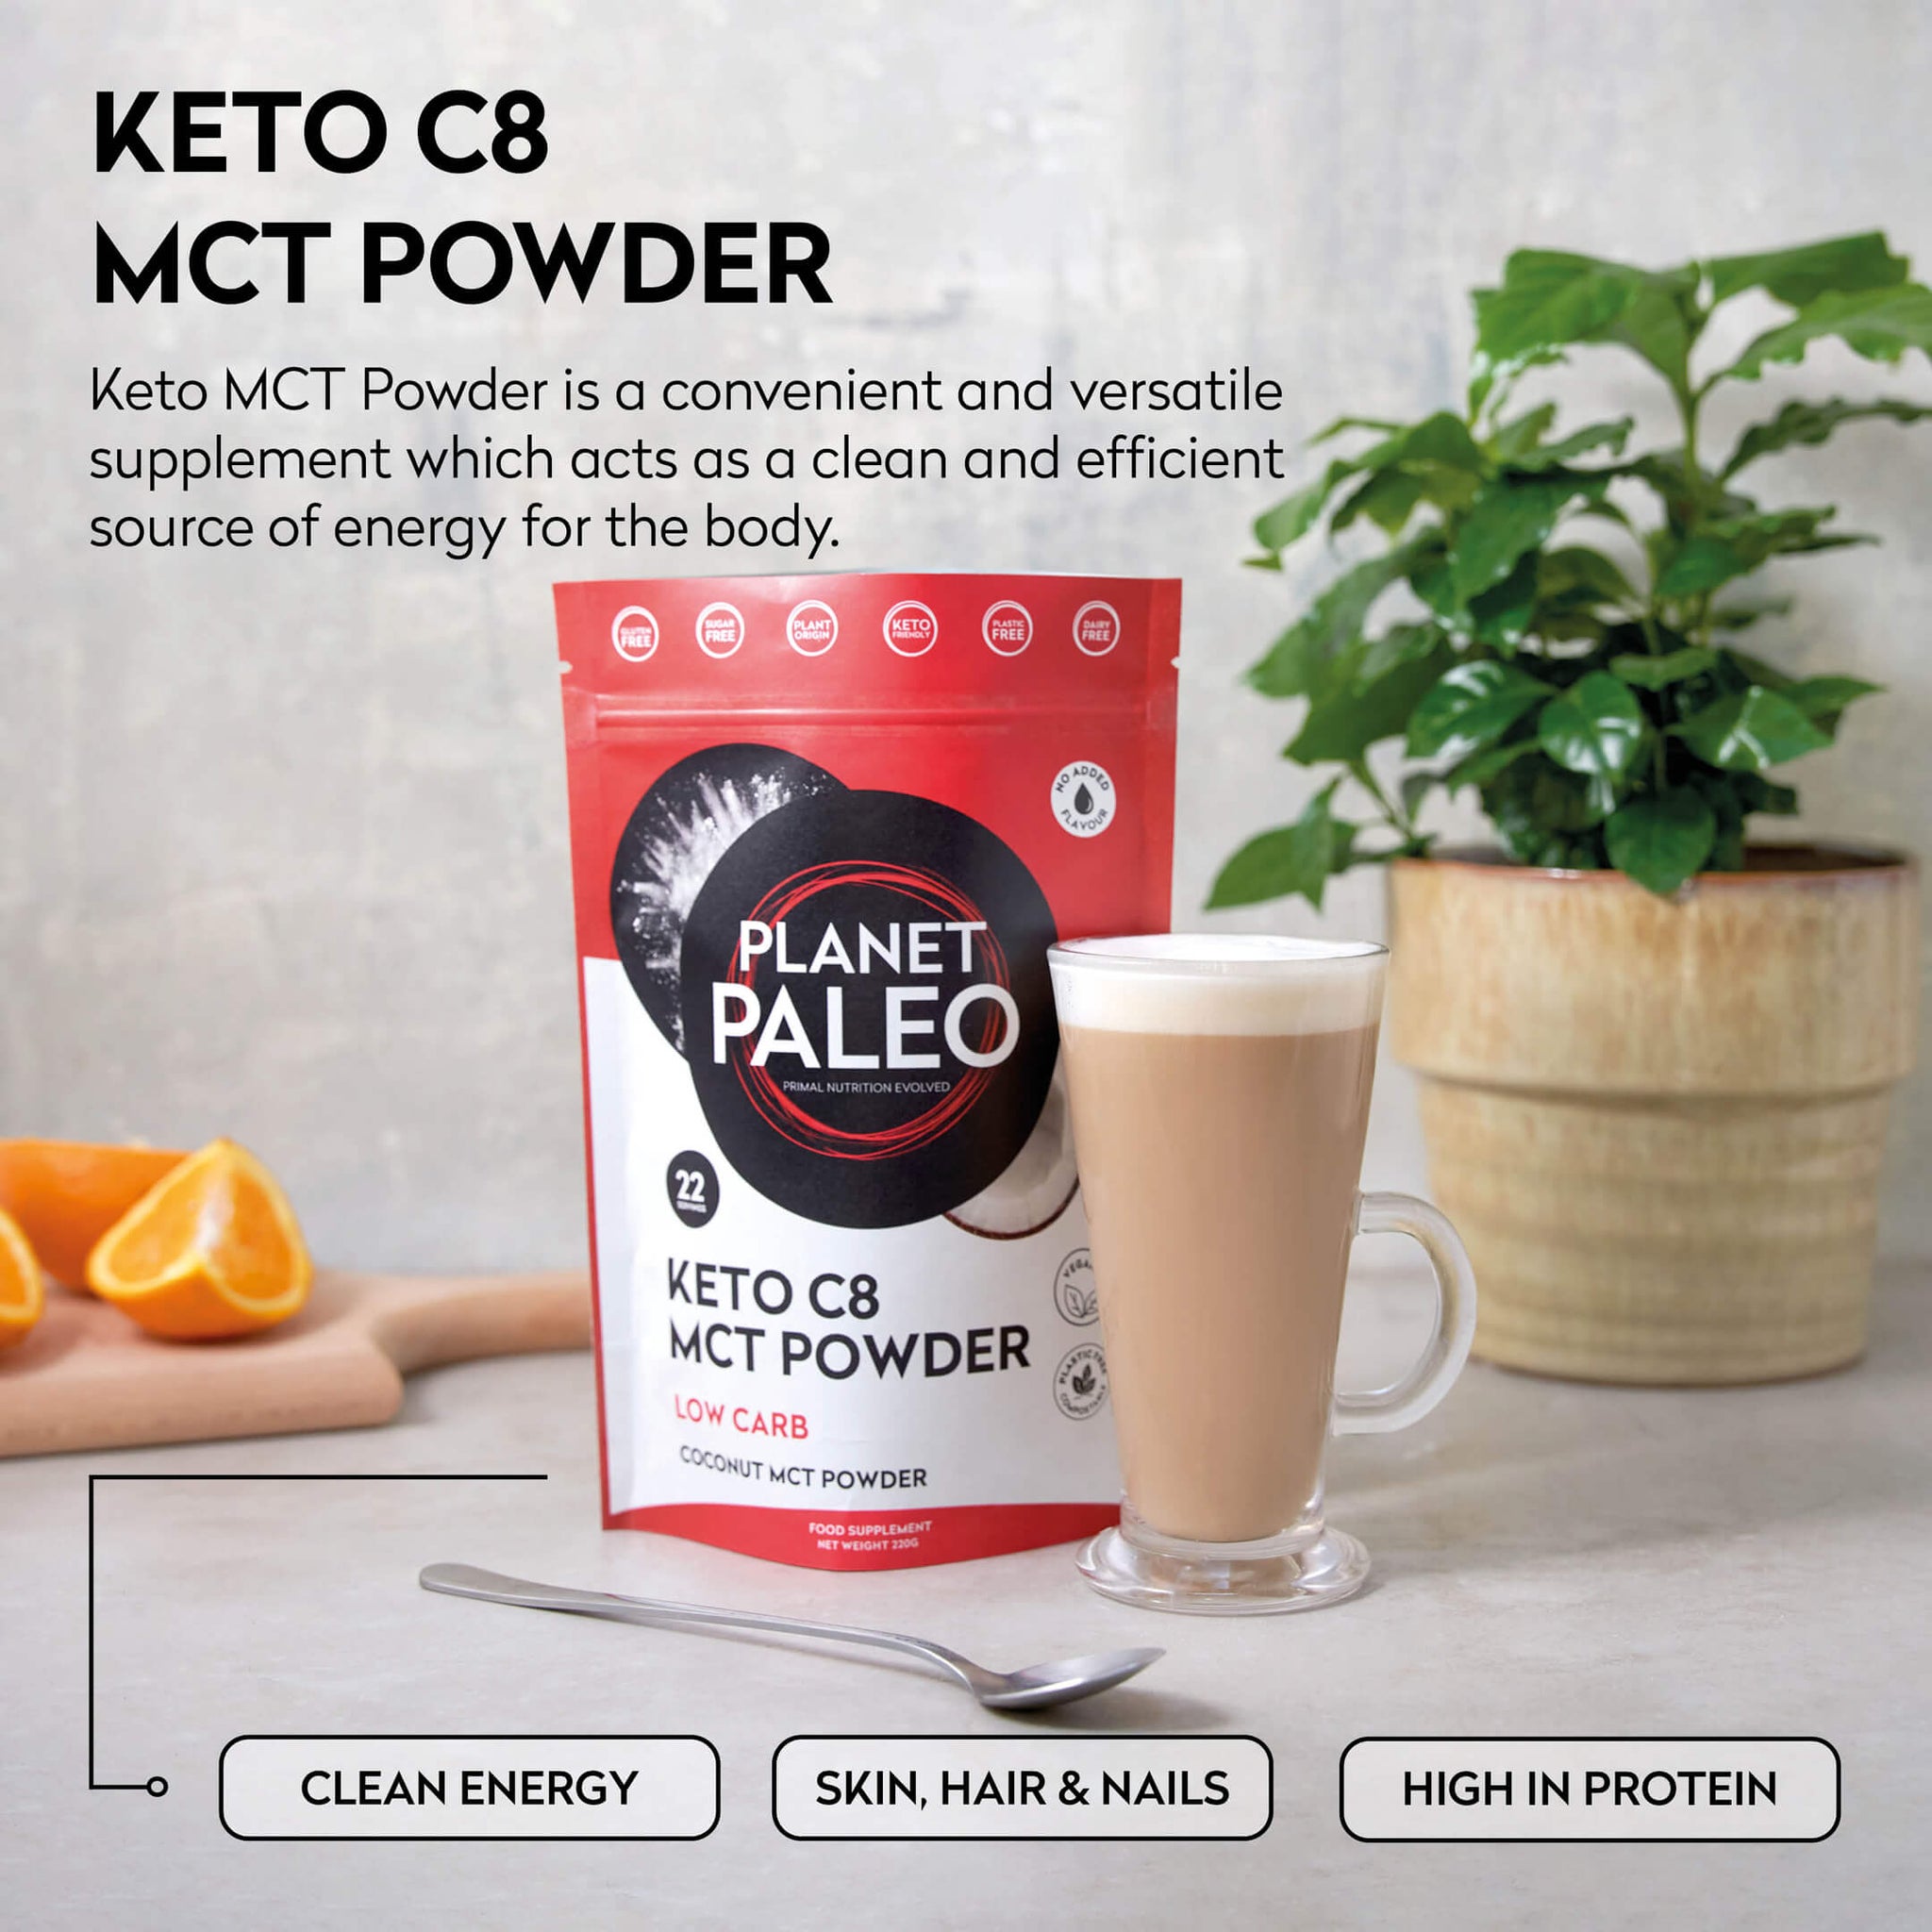 Keto C8 MCT Powder